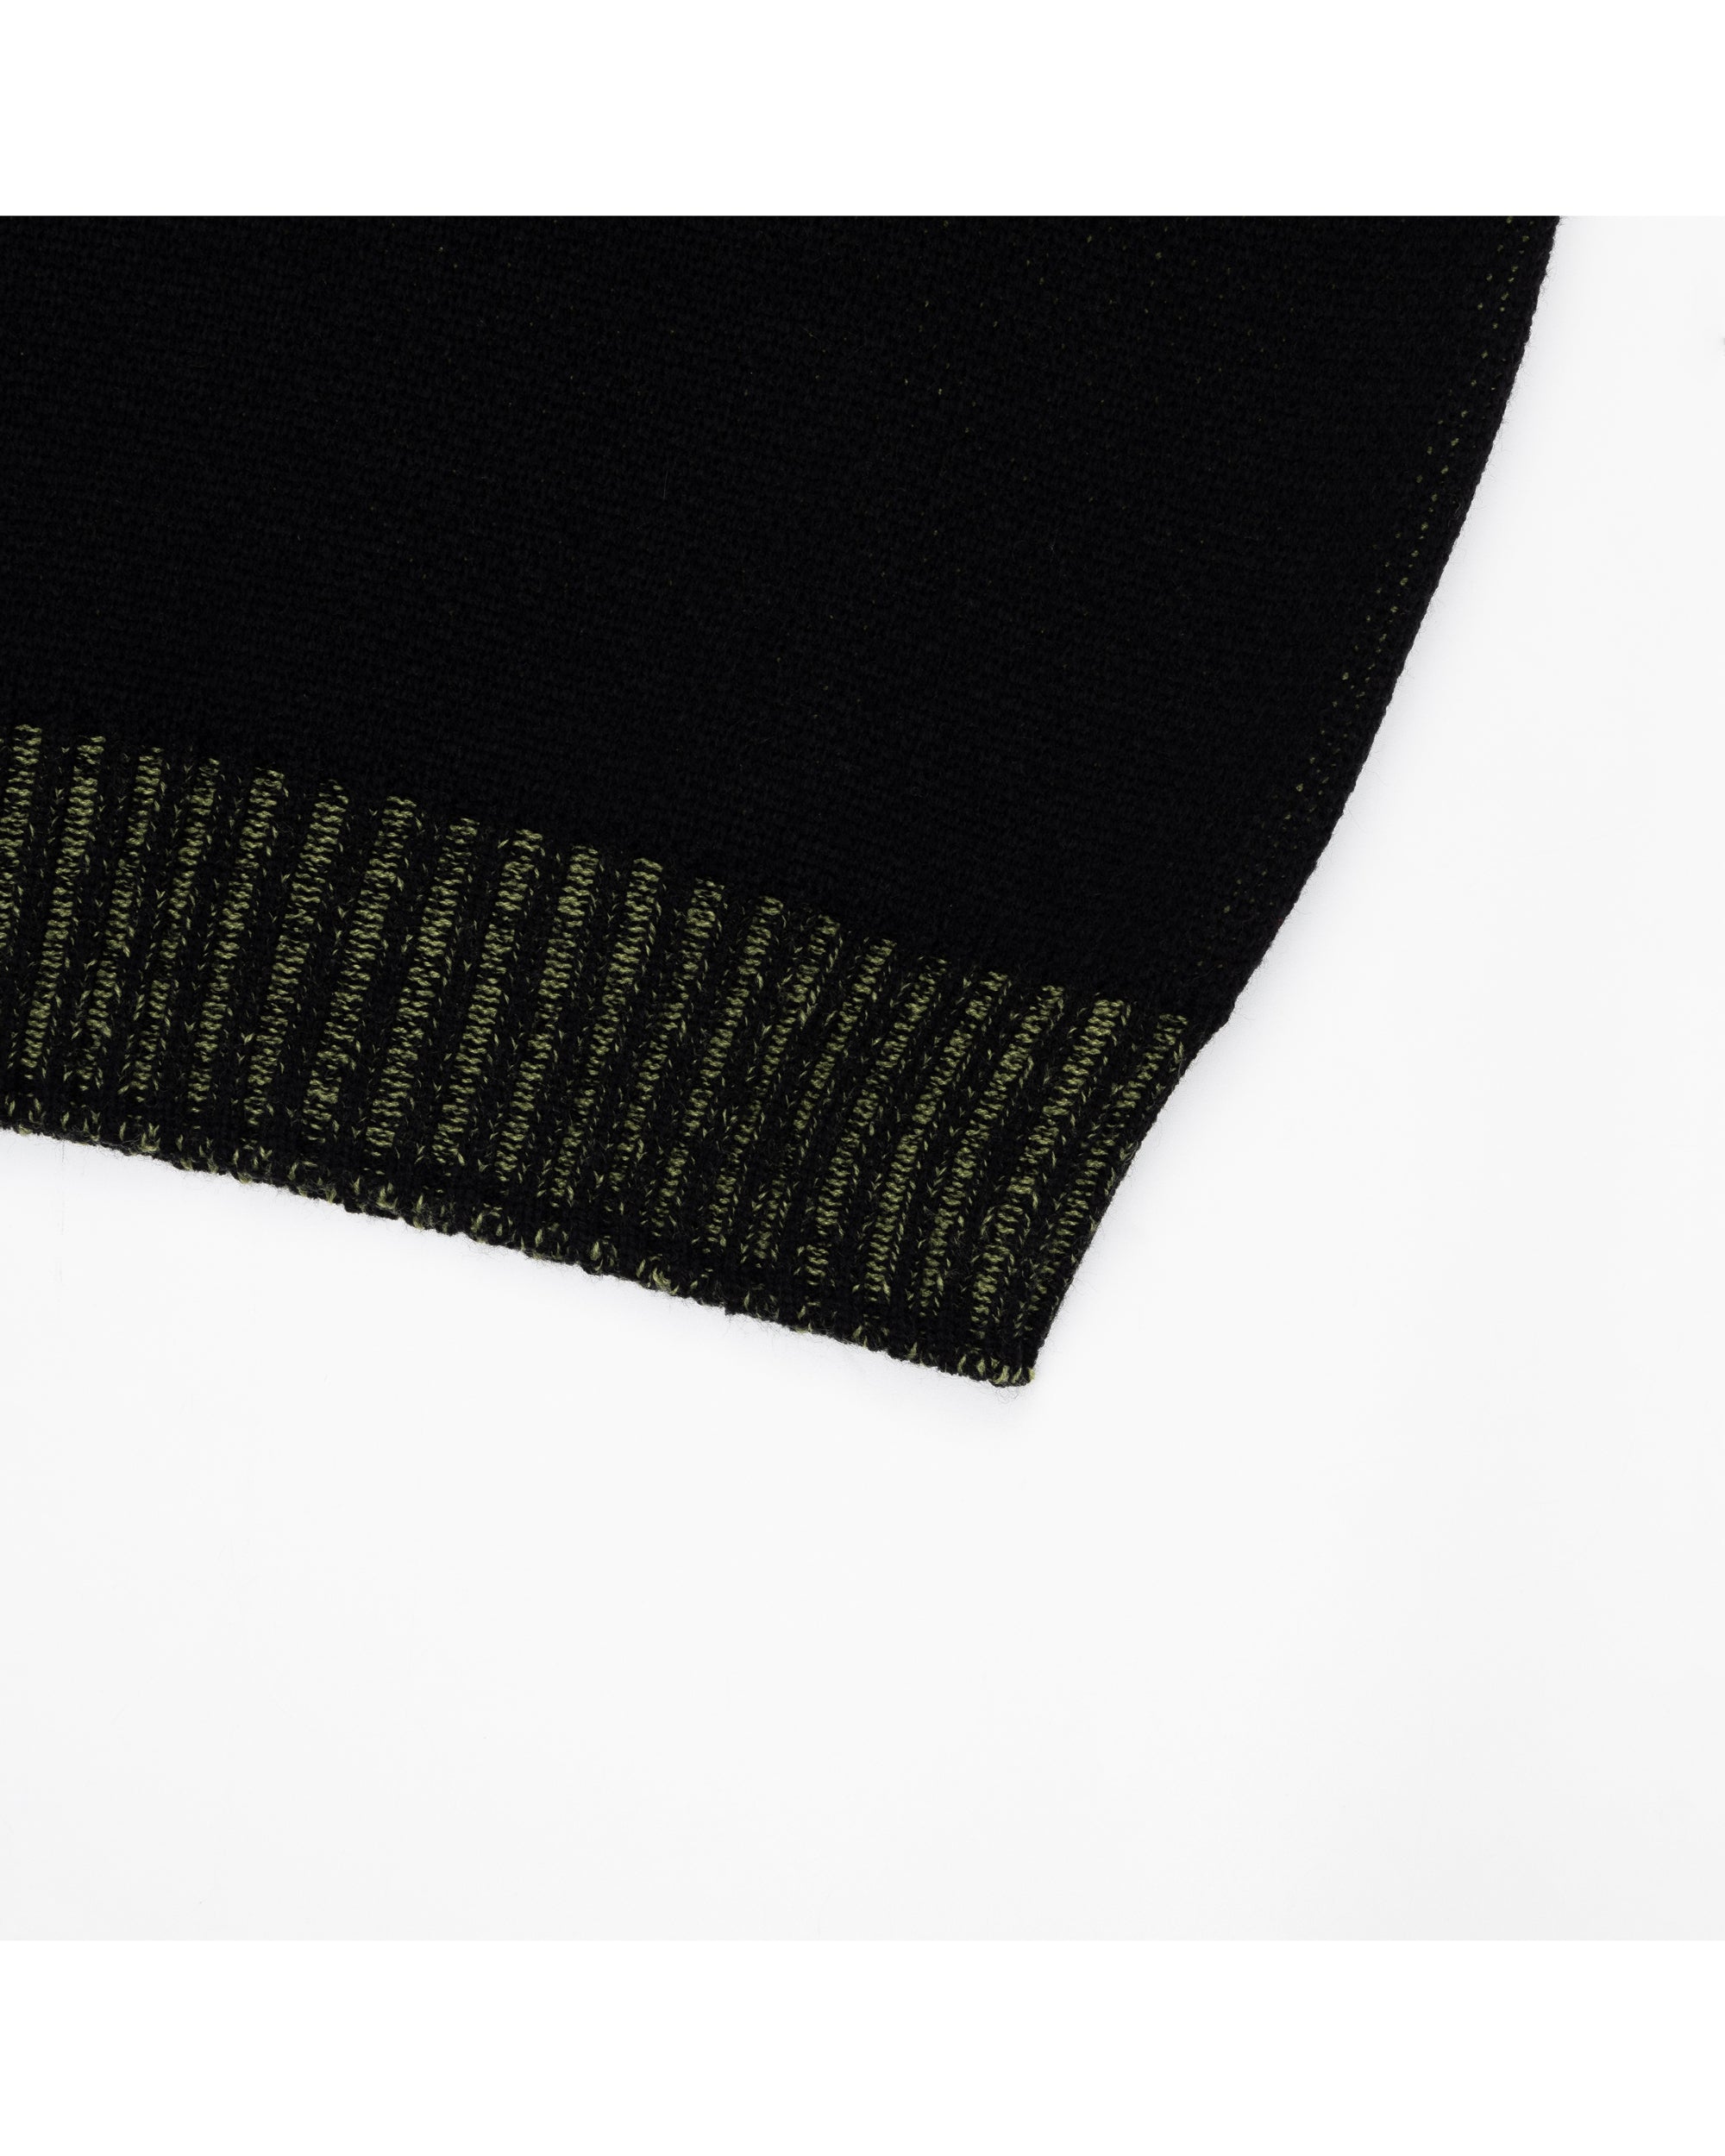 Devil Jacquard Knit (Black)